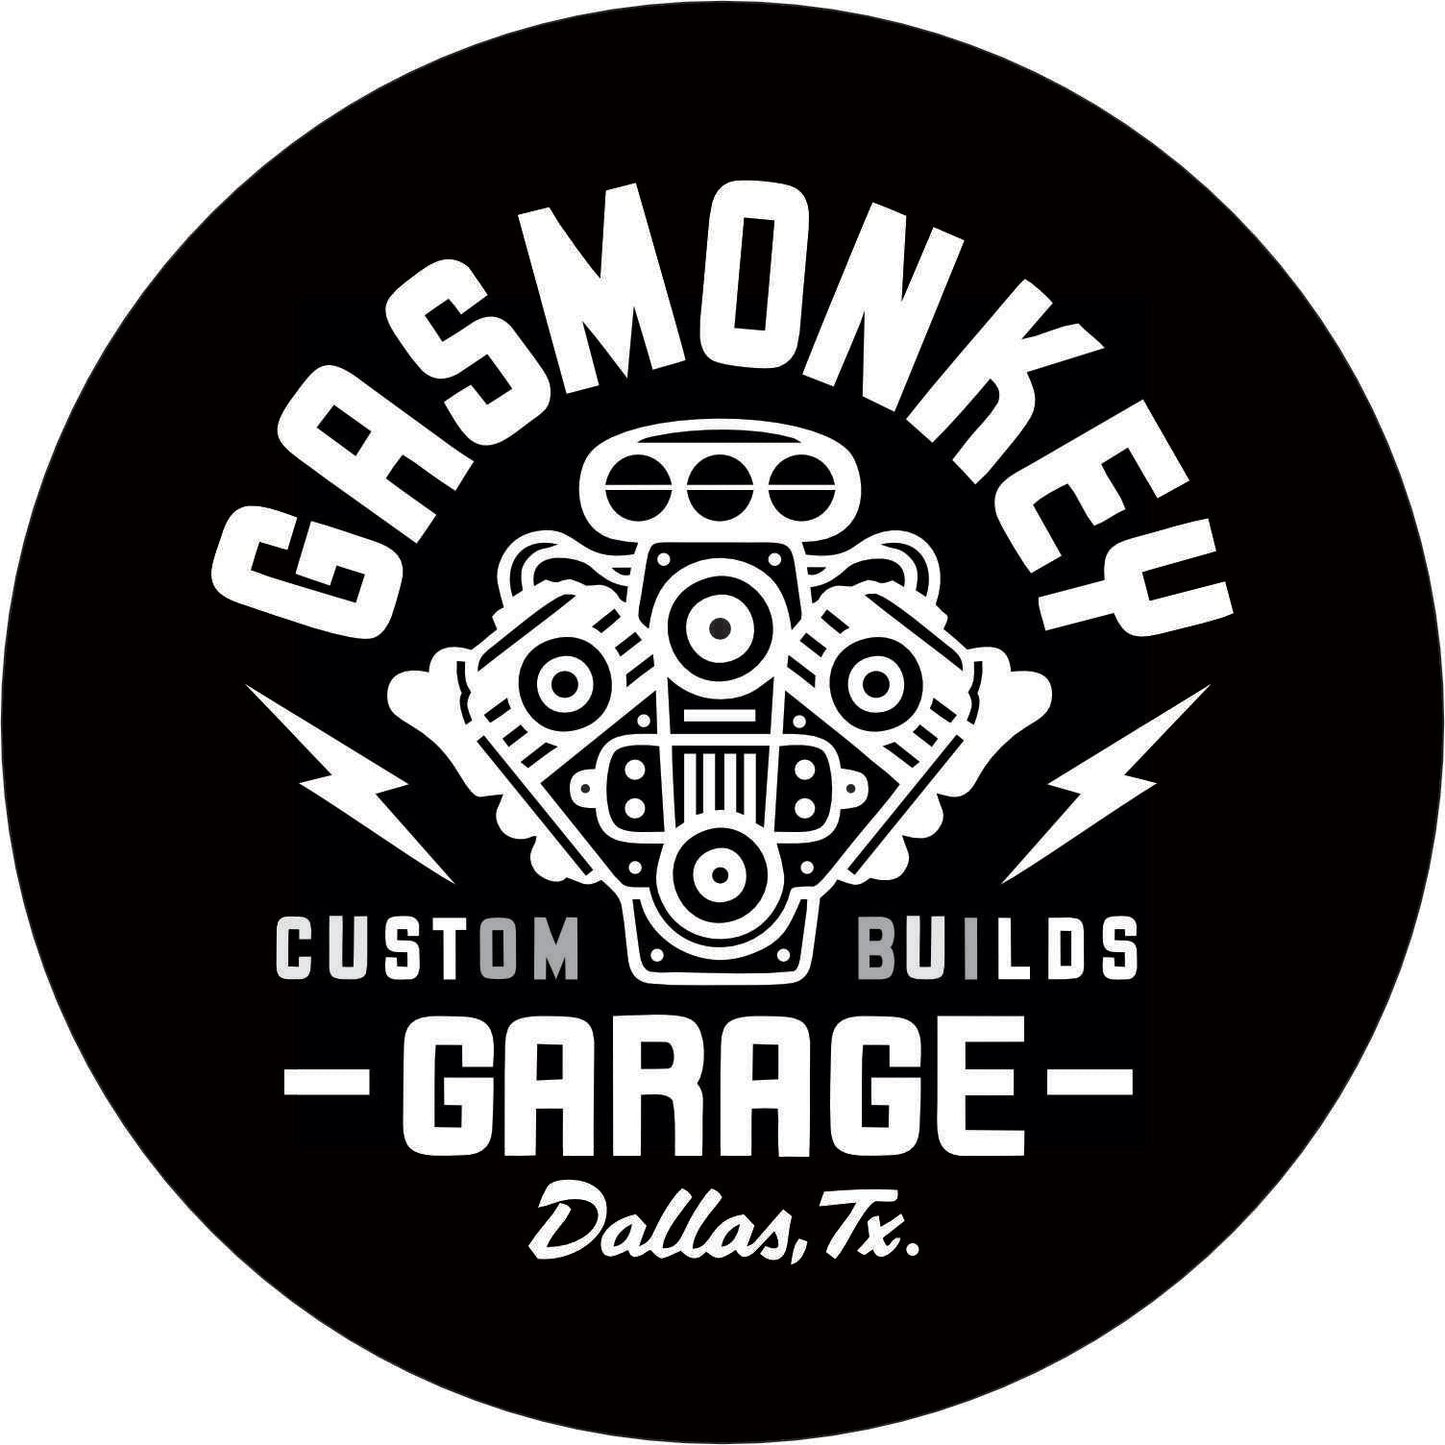 130-Single-sided illuminated sign - Gas Monkey Garage